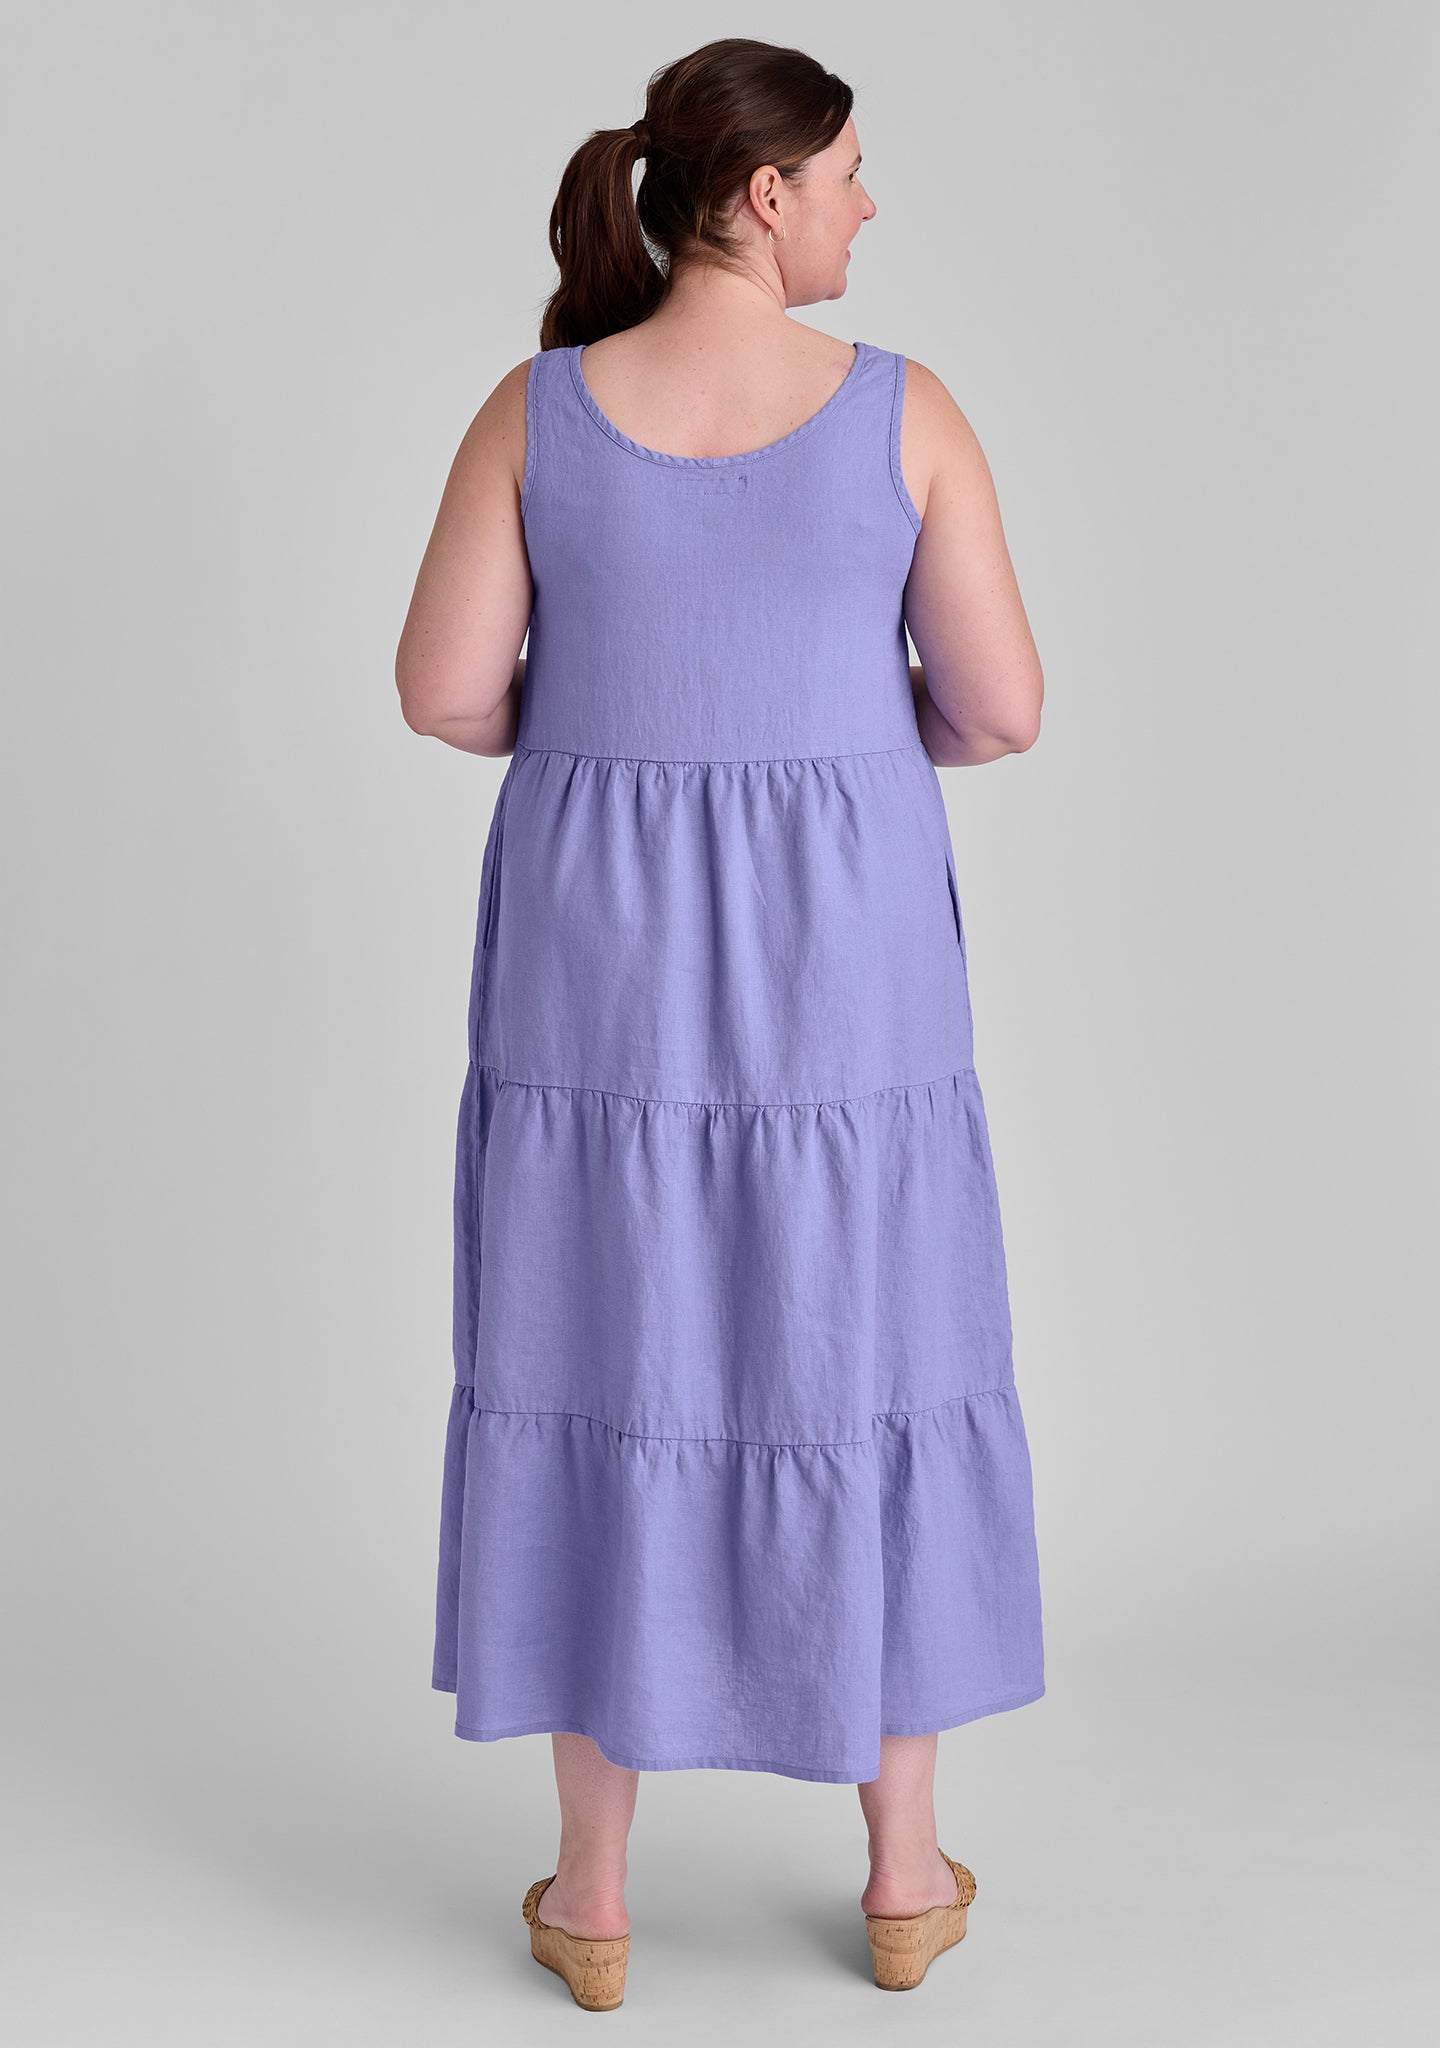 tiered dress linen maxi dress details